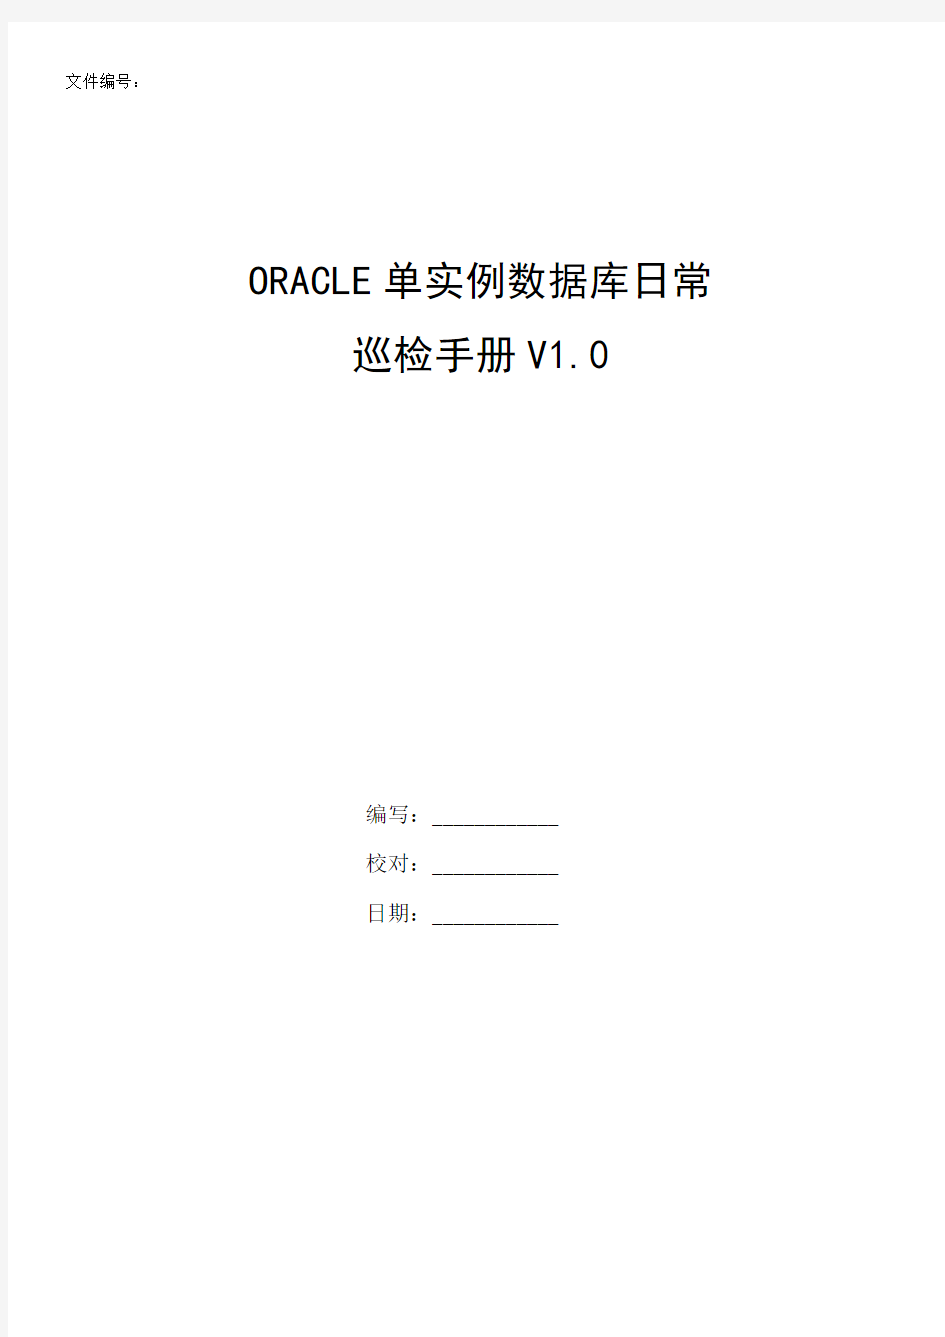 文档-oracle11g_单实例日常巡检手册